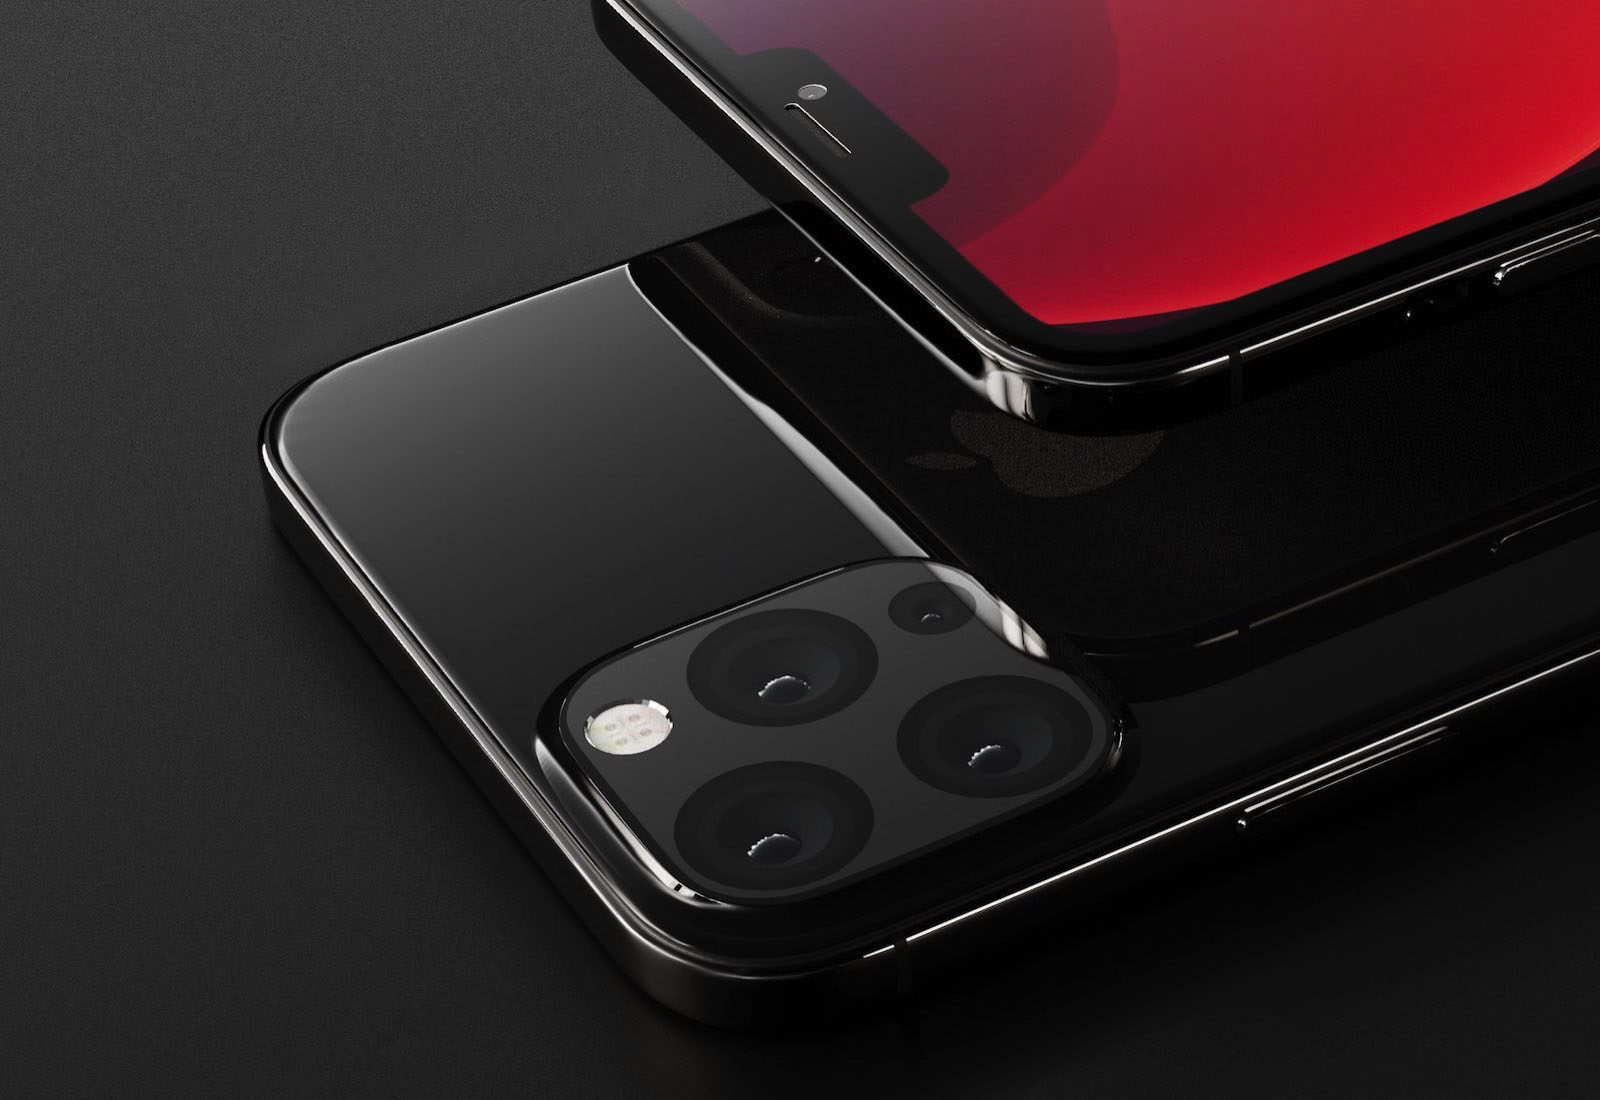 iphone-2020-concept-ben-geskin-2